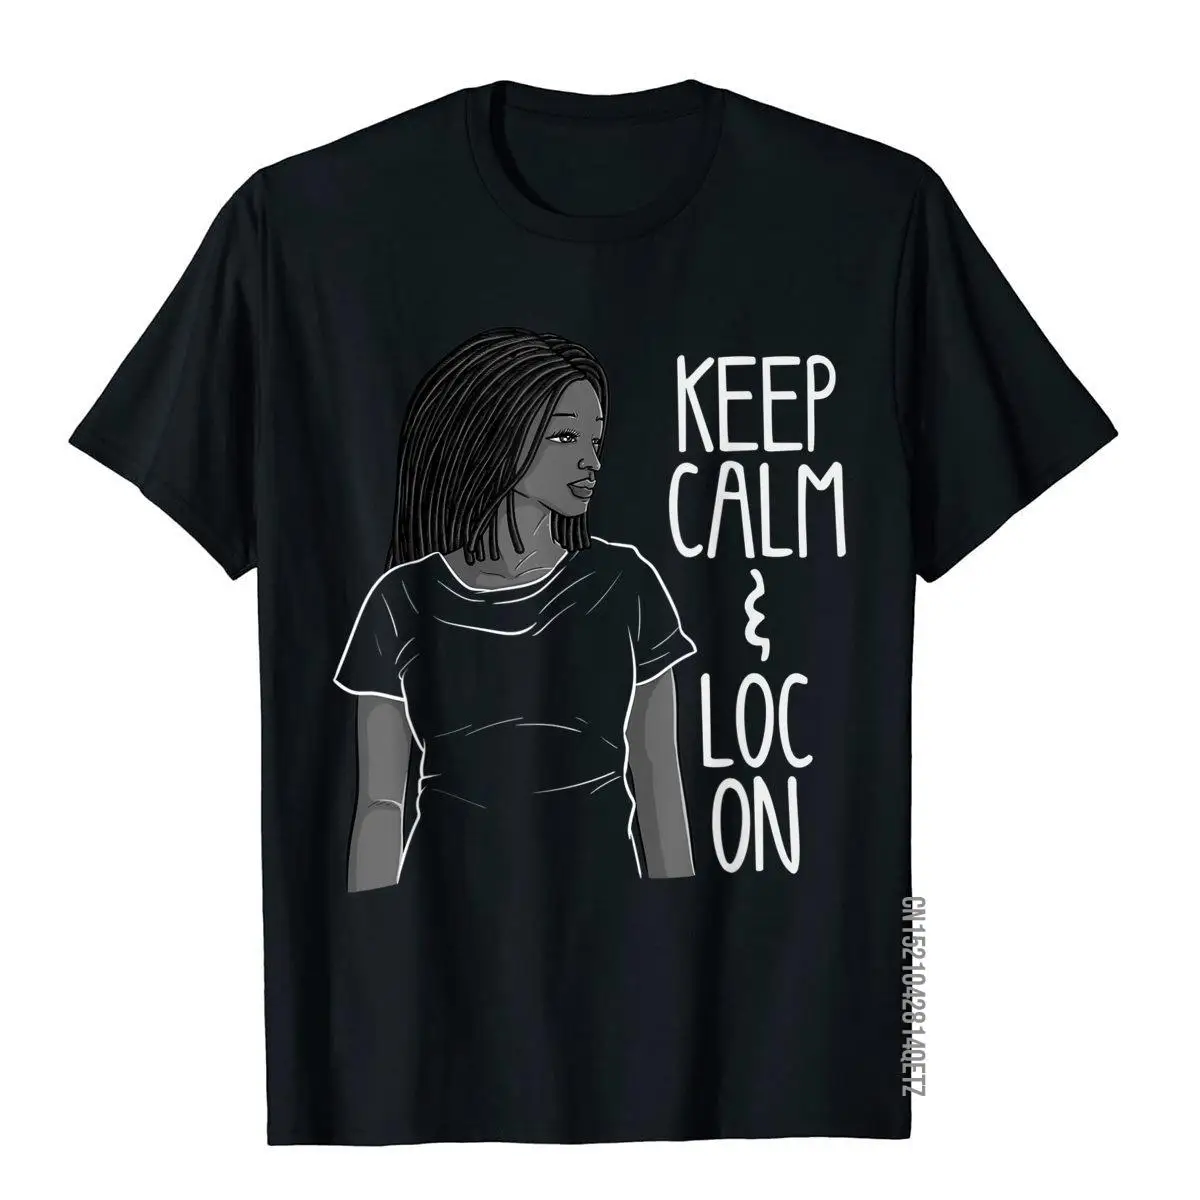 

Забавная черная футболка с меланином и дредами в подарок, Милая женская хлопковая Футболка в стиле афро, модные мужские футболки, Забавные футболки на день рождения